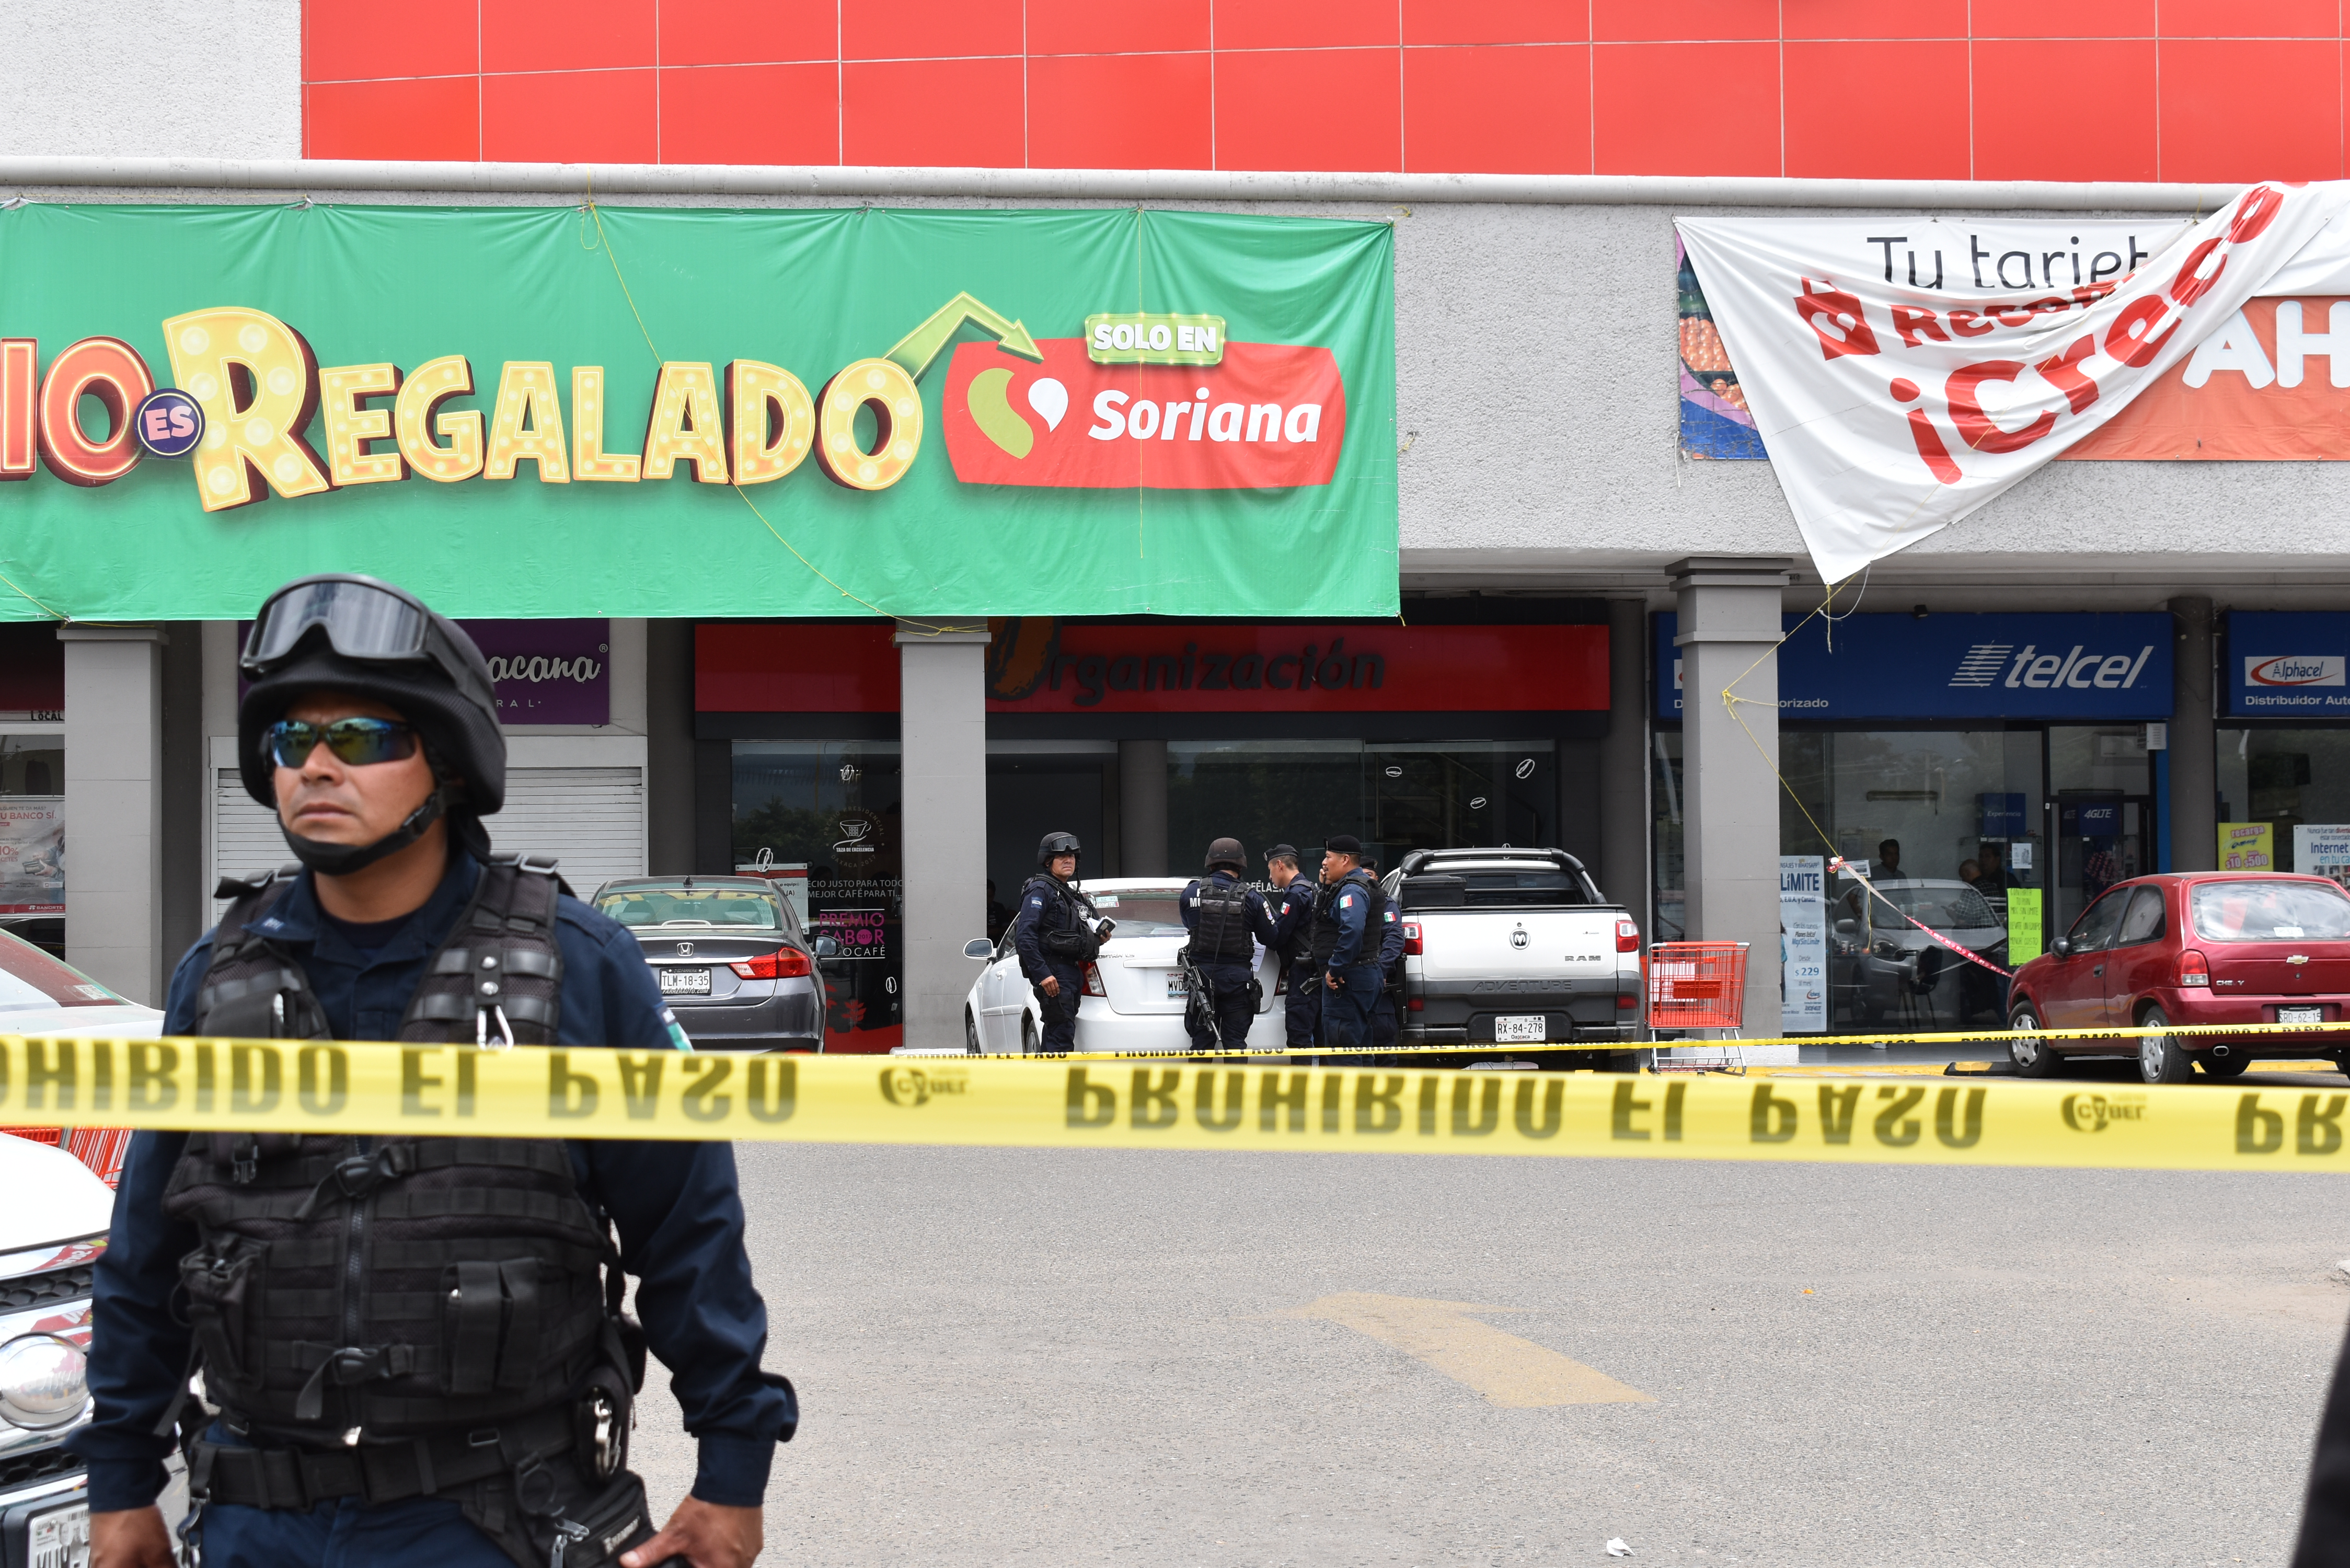 Ejecutan a balazos a abogado cuando paseaba con su familia en Plaza Oaxaca